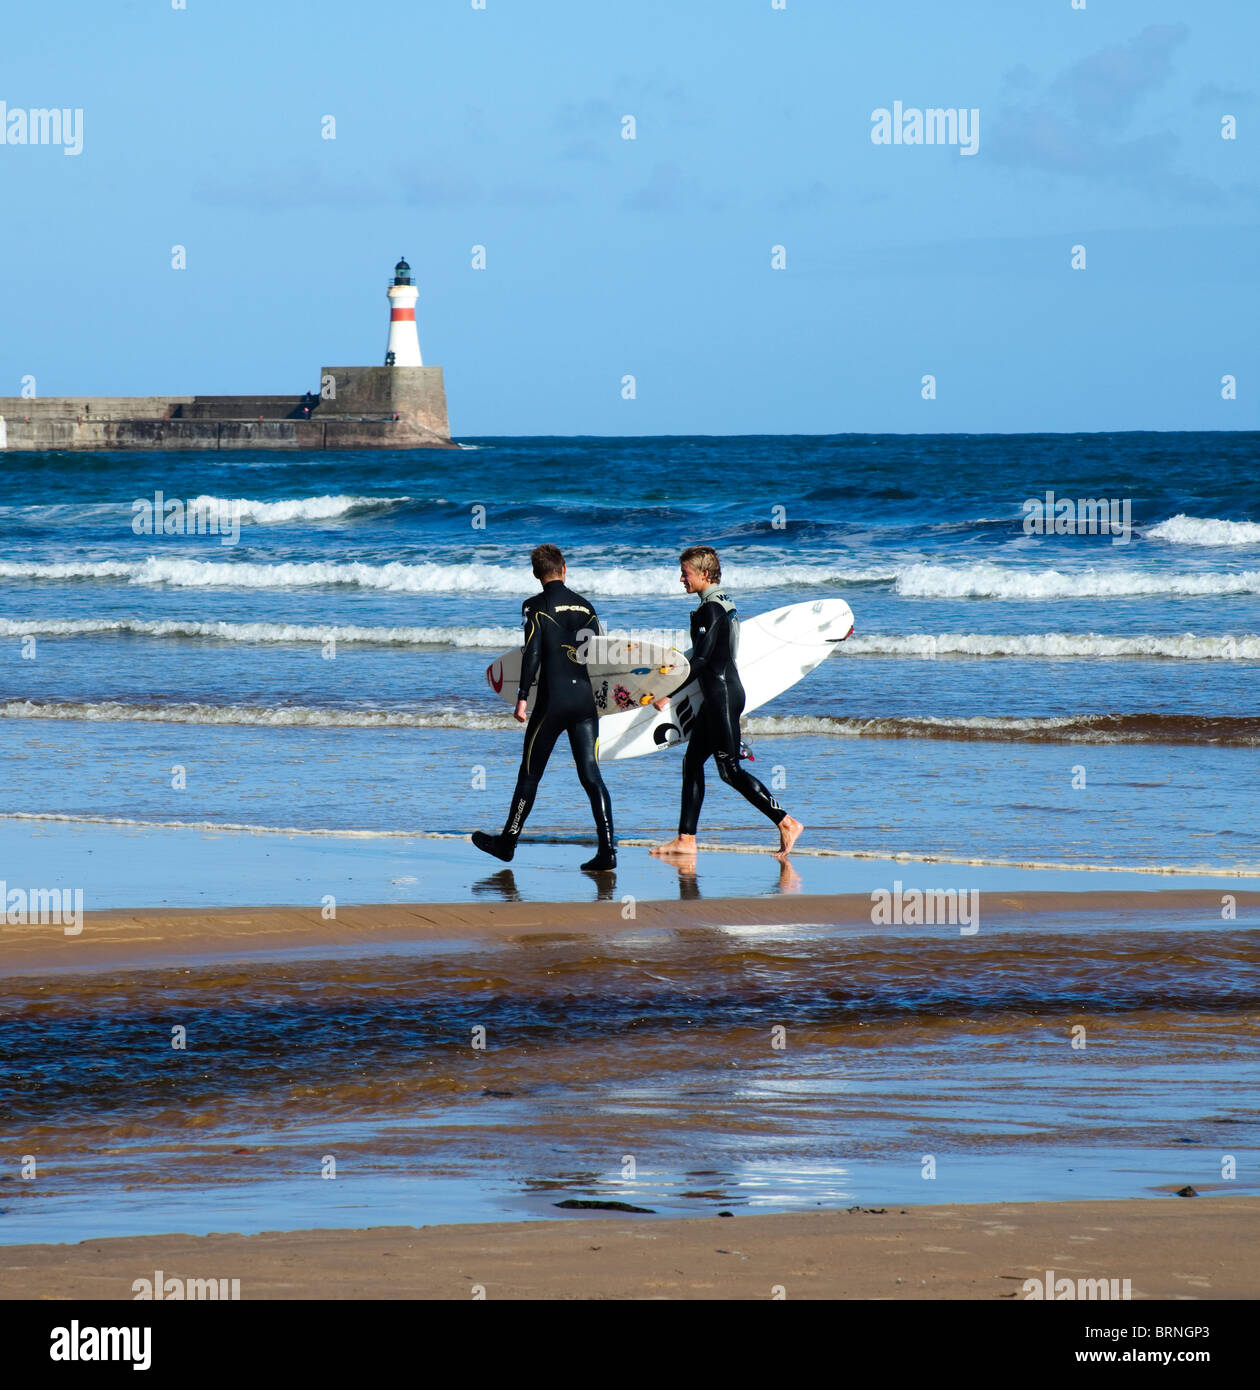 Les surfeurs, Fraserburgh, Écosse, Royaume-Uni, Europe Banque D'Images